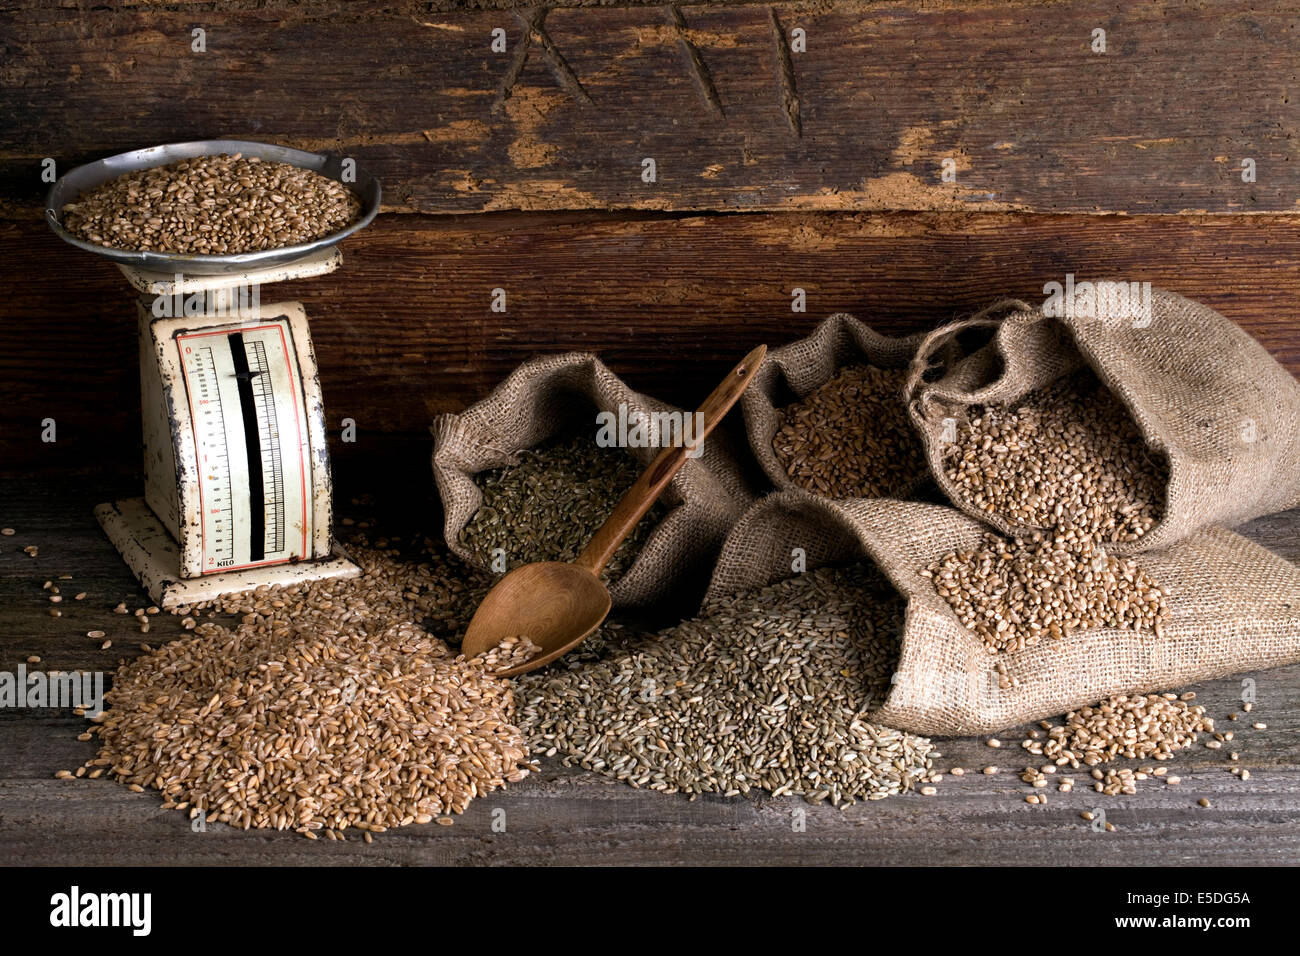 Vari tipi di cereali, frumento, segale, Immaturo grano farro e spelta, in sacchi di iuta su legno rustico Foto Stock